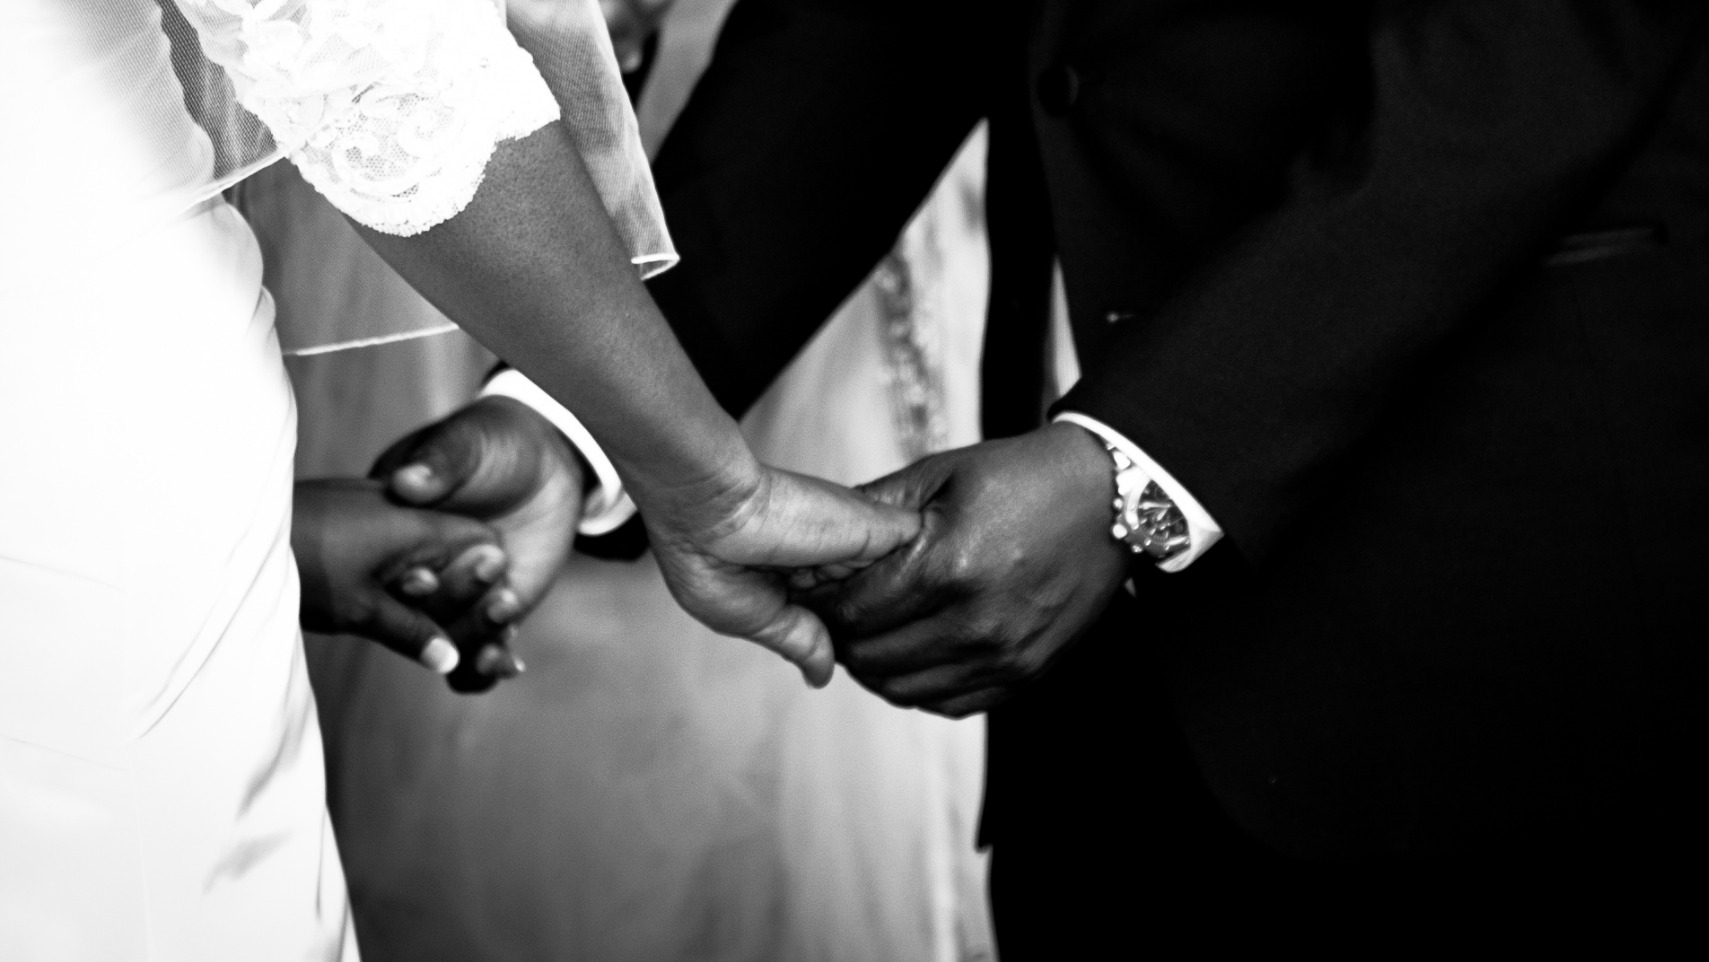 Des prêtres africains revendiquent le droit au mariage (Photo d'illustration:Ryan King/Flickr/CC BY-ND 2.0)